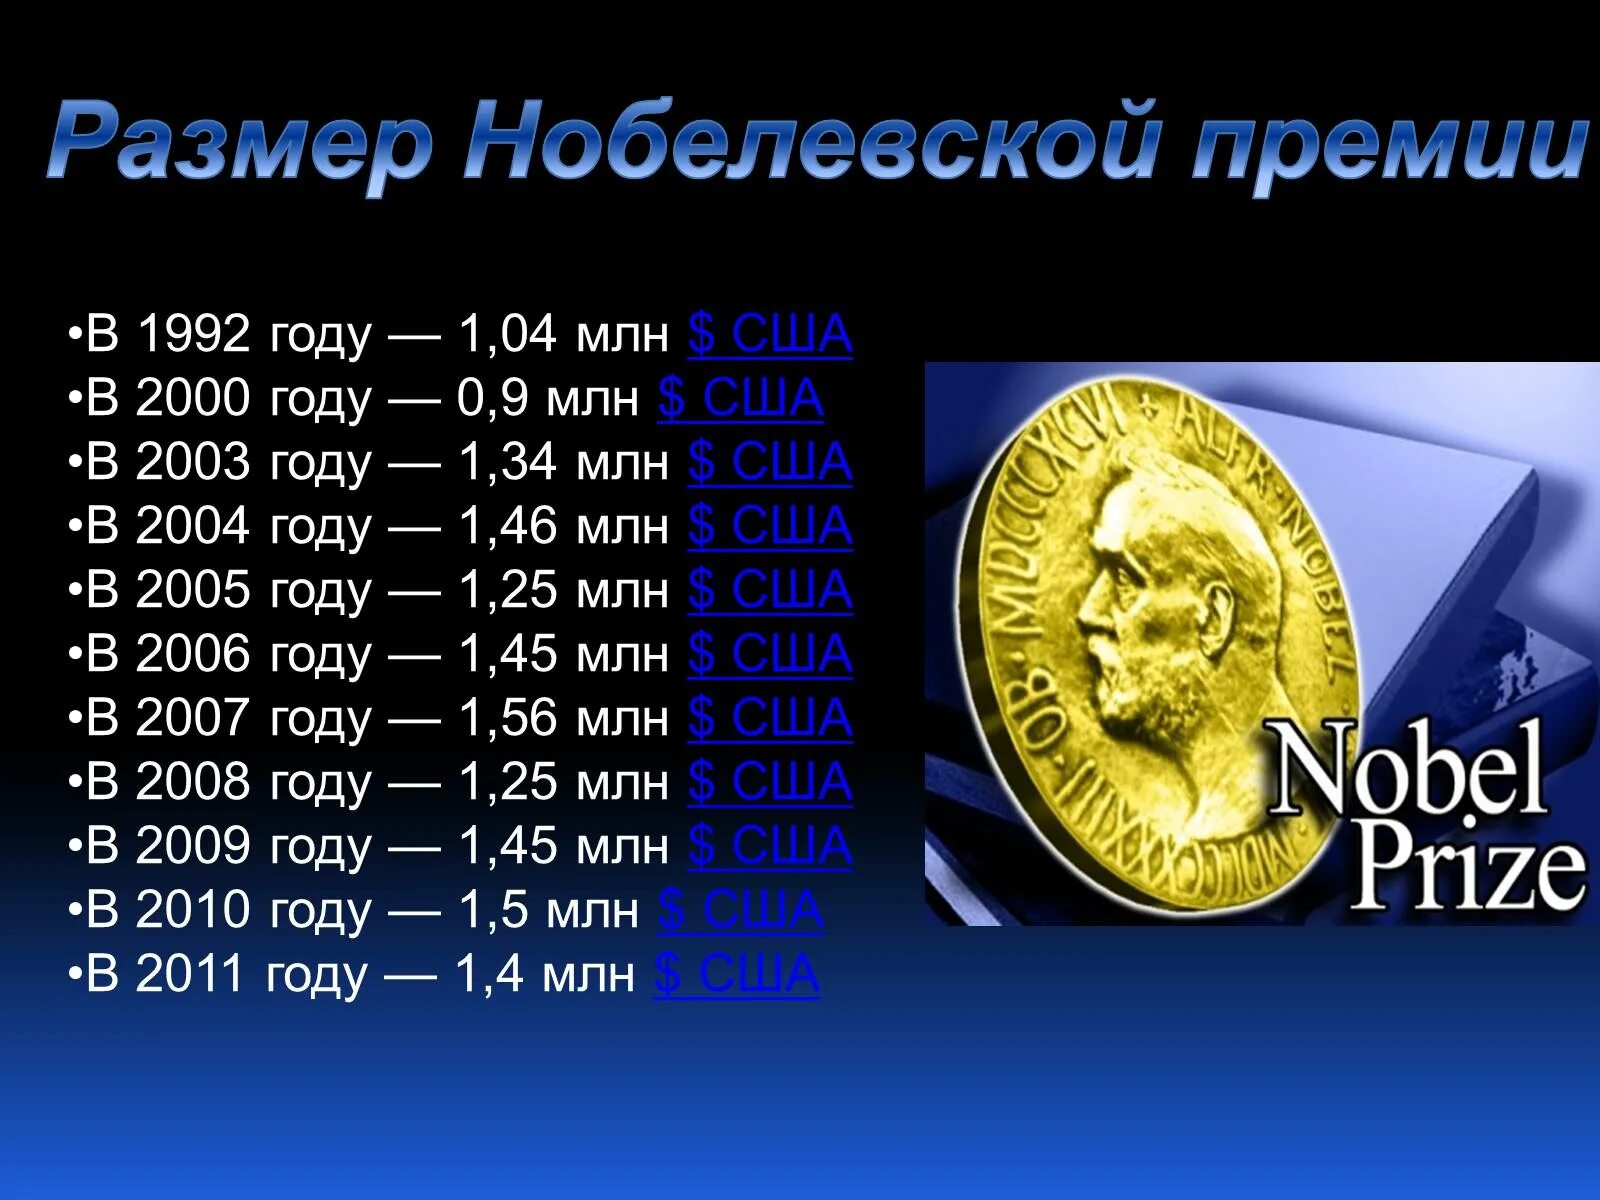 Размер Нобелевской премии. Нобелевская премия сумма. Монета Нобелевской премии. Размер Нобелевской премии по годам.